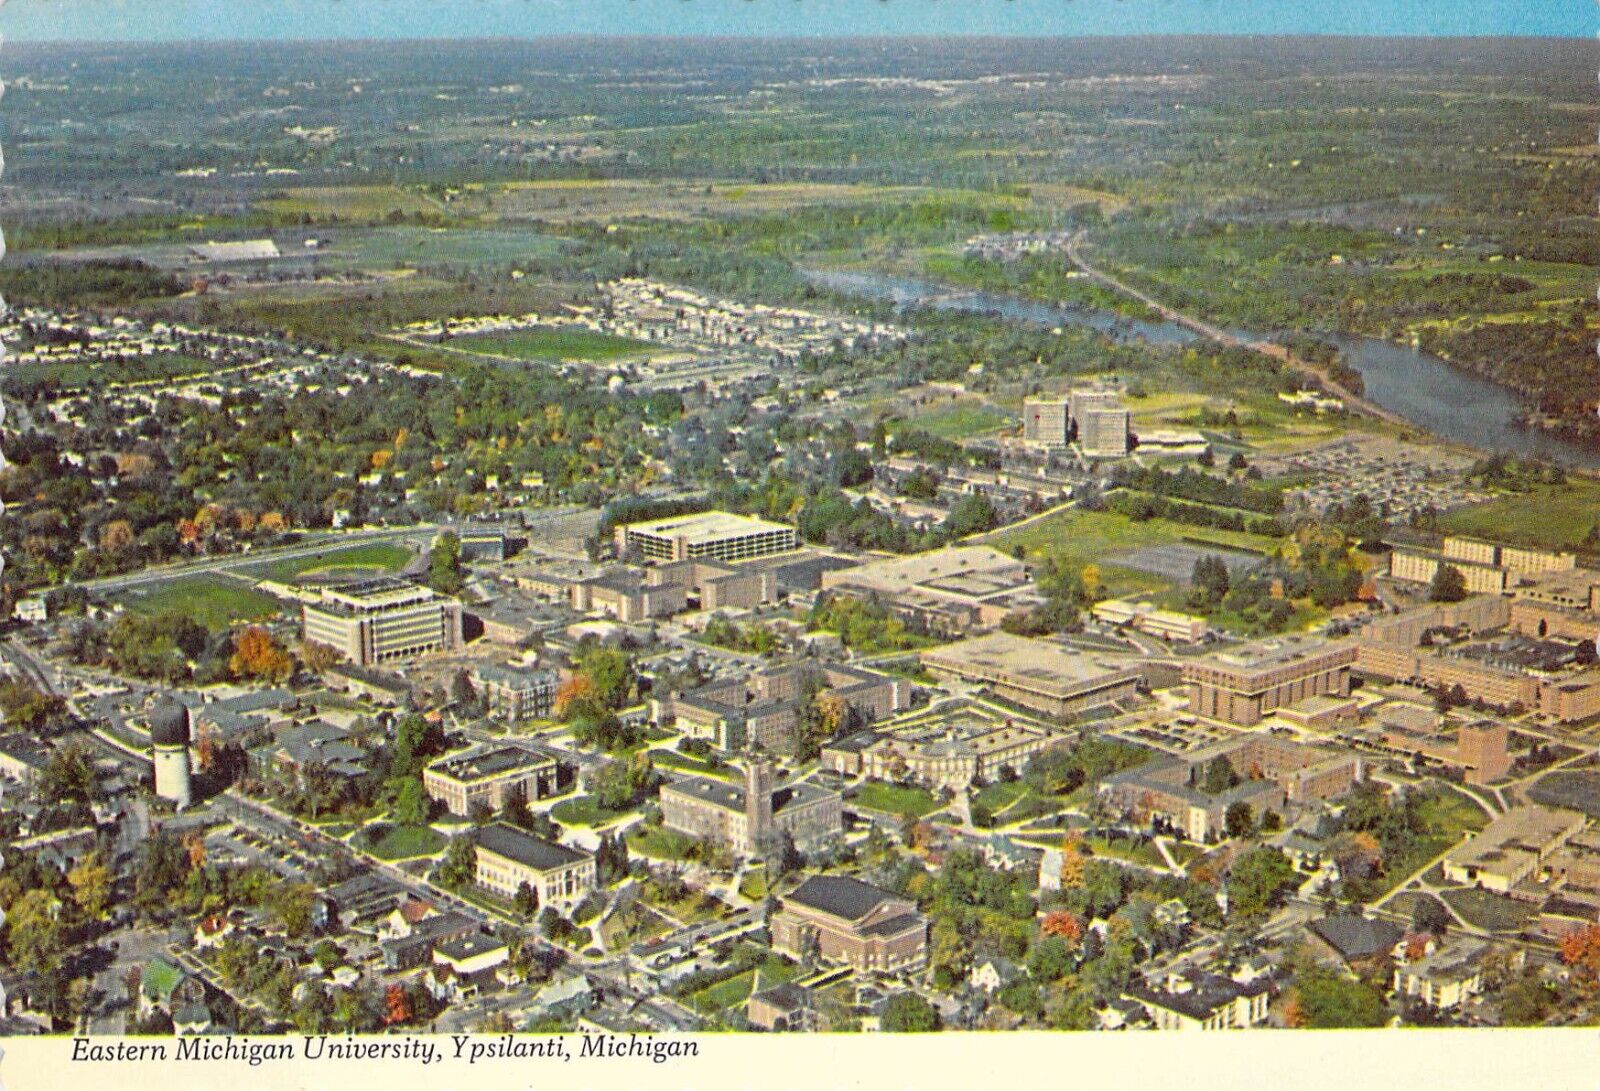 1971 Eastern Michigan University Campus by Hiawatha card EMU 4x6 postcard CT36